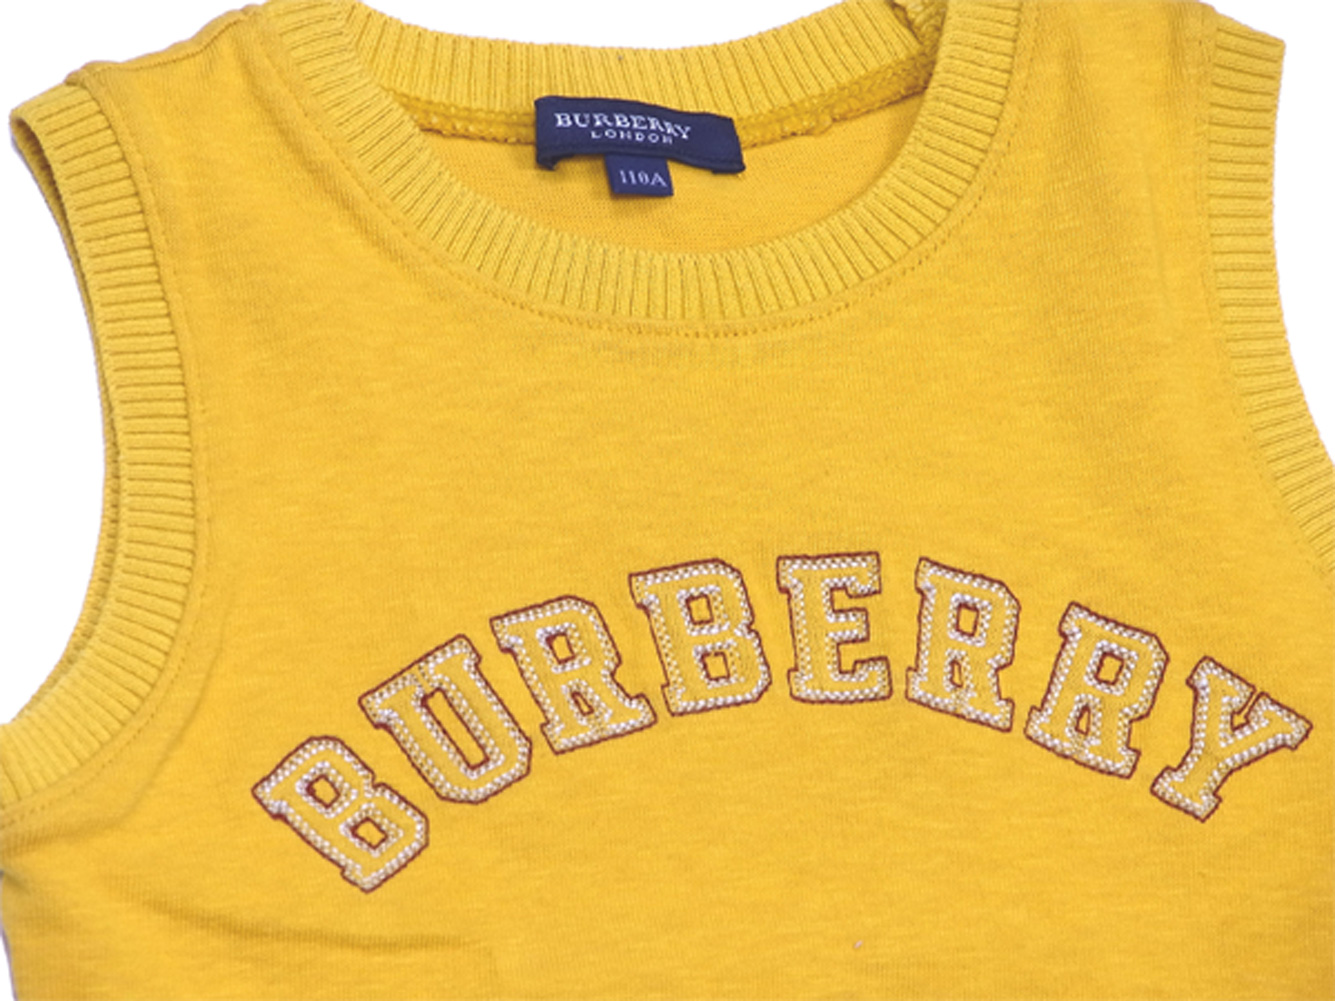 burberry shirt kids bordeaux